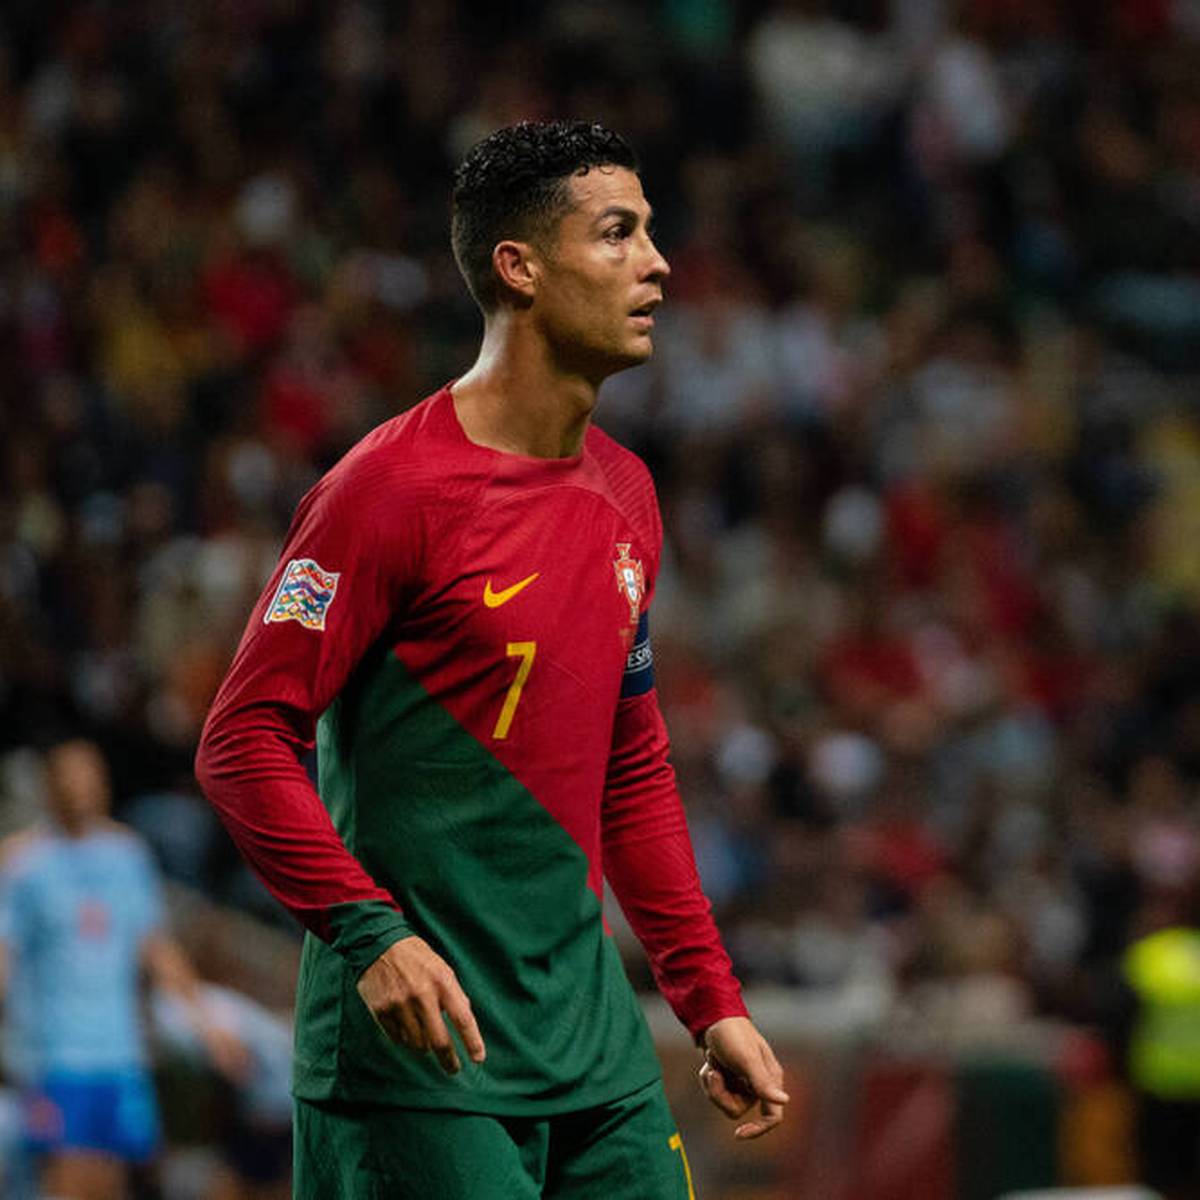 Cristiano Ronaldo soll im Sommer ein fettes Angebot aus Saudi-Arabien vorgelegt bekommen haben. Nun spricht ein Klubboss offen darüber.